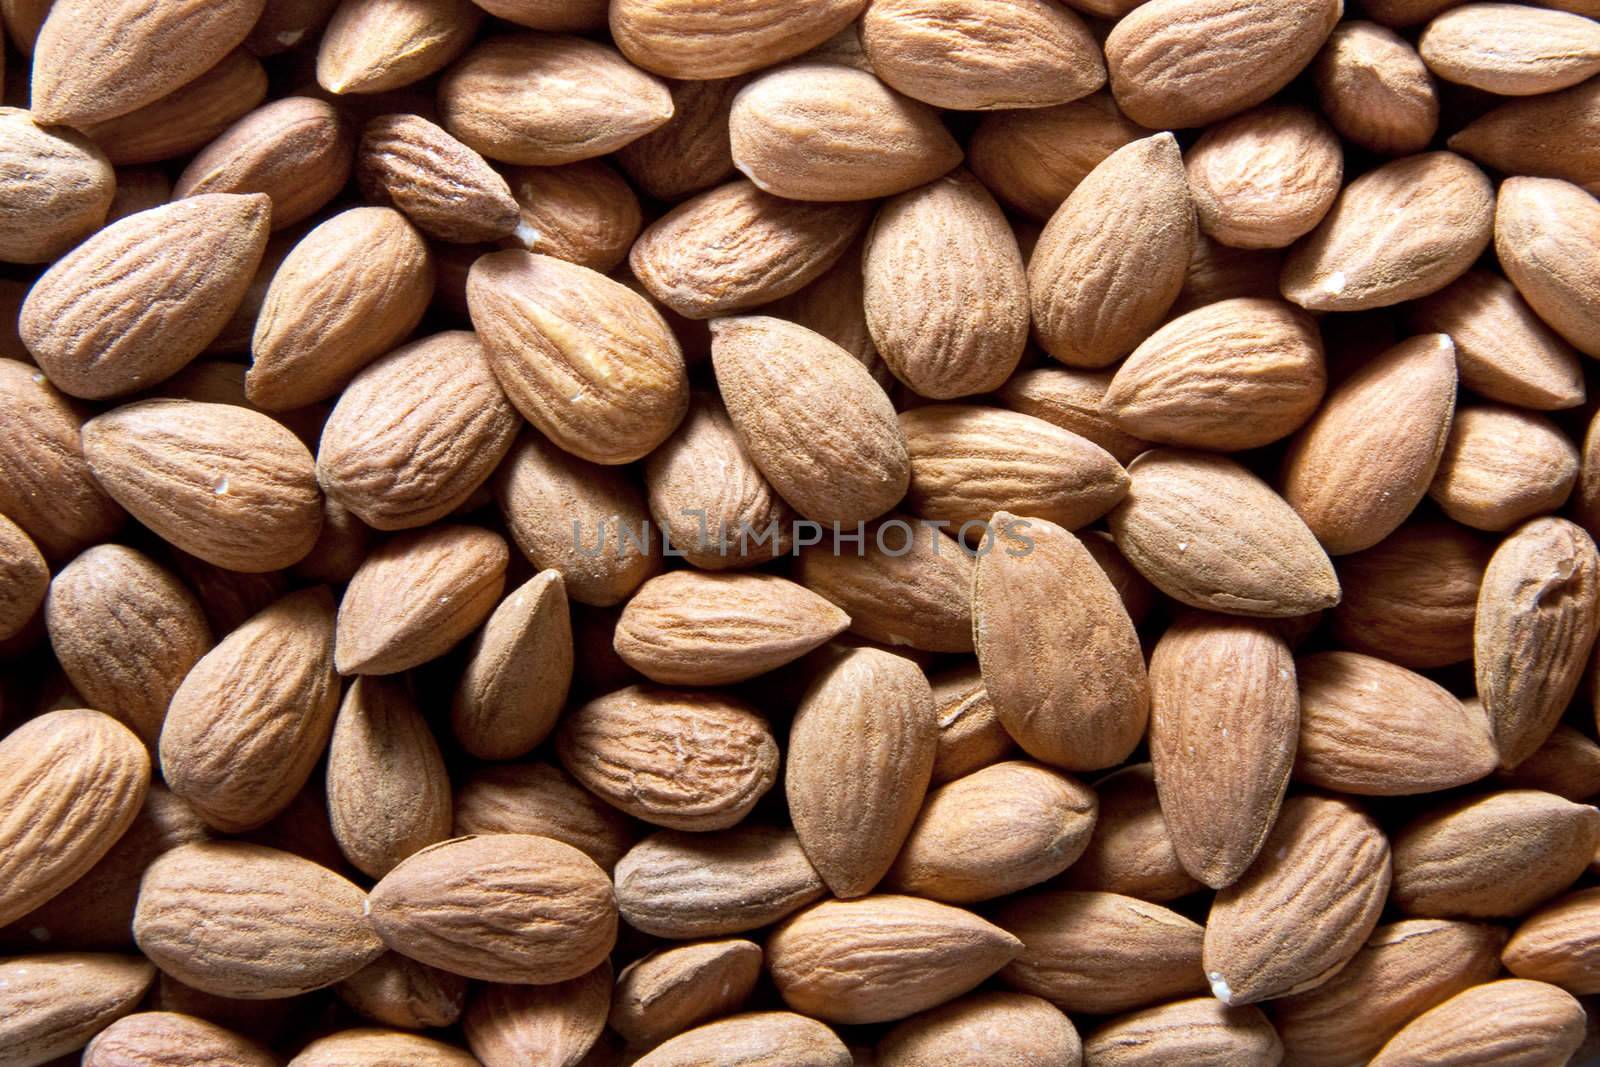 Raw almonds by raliand